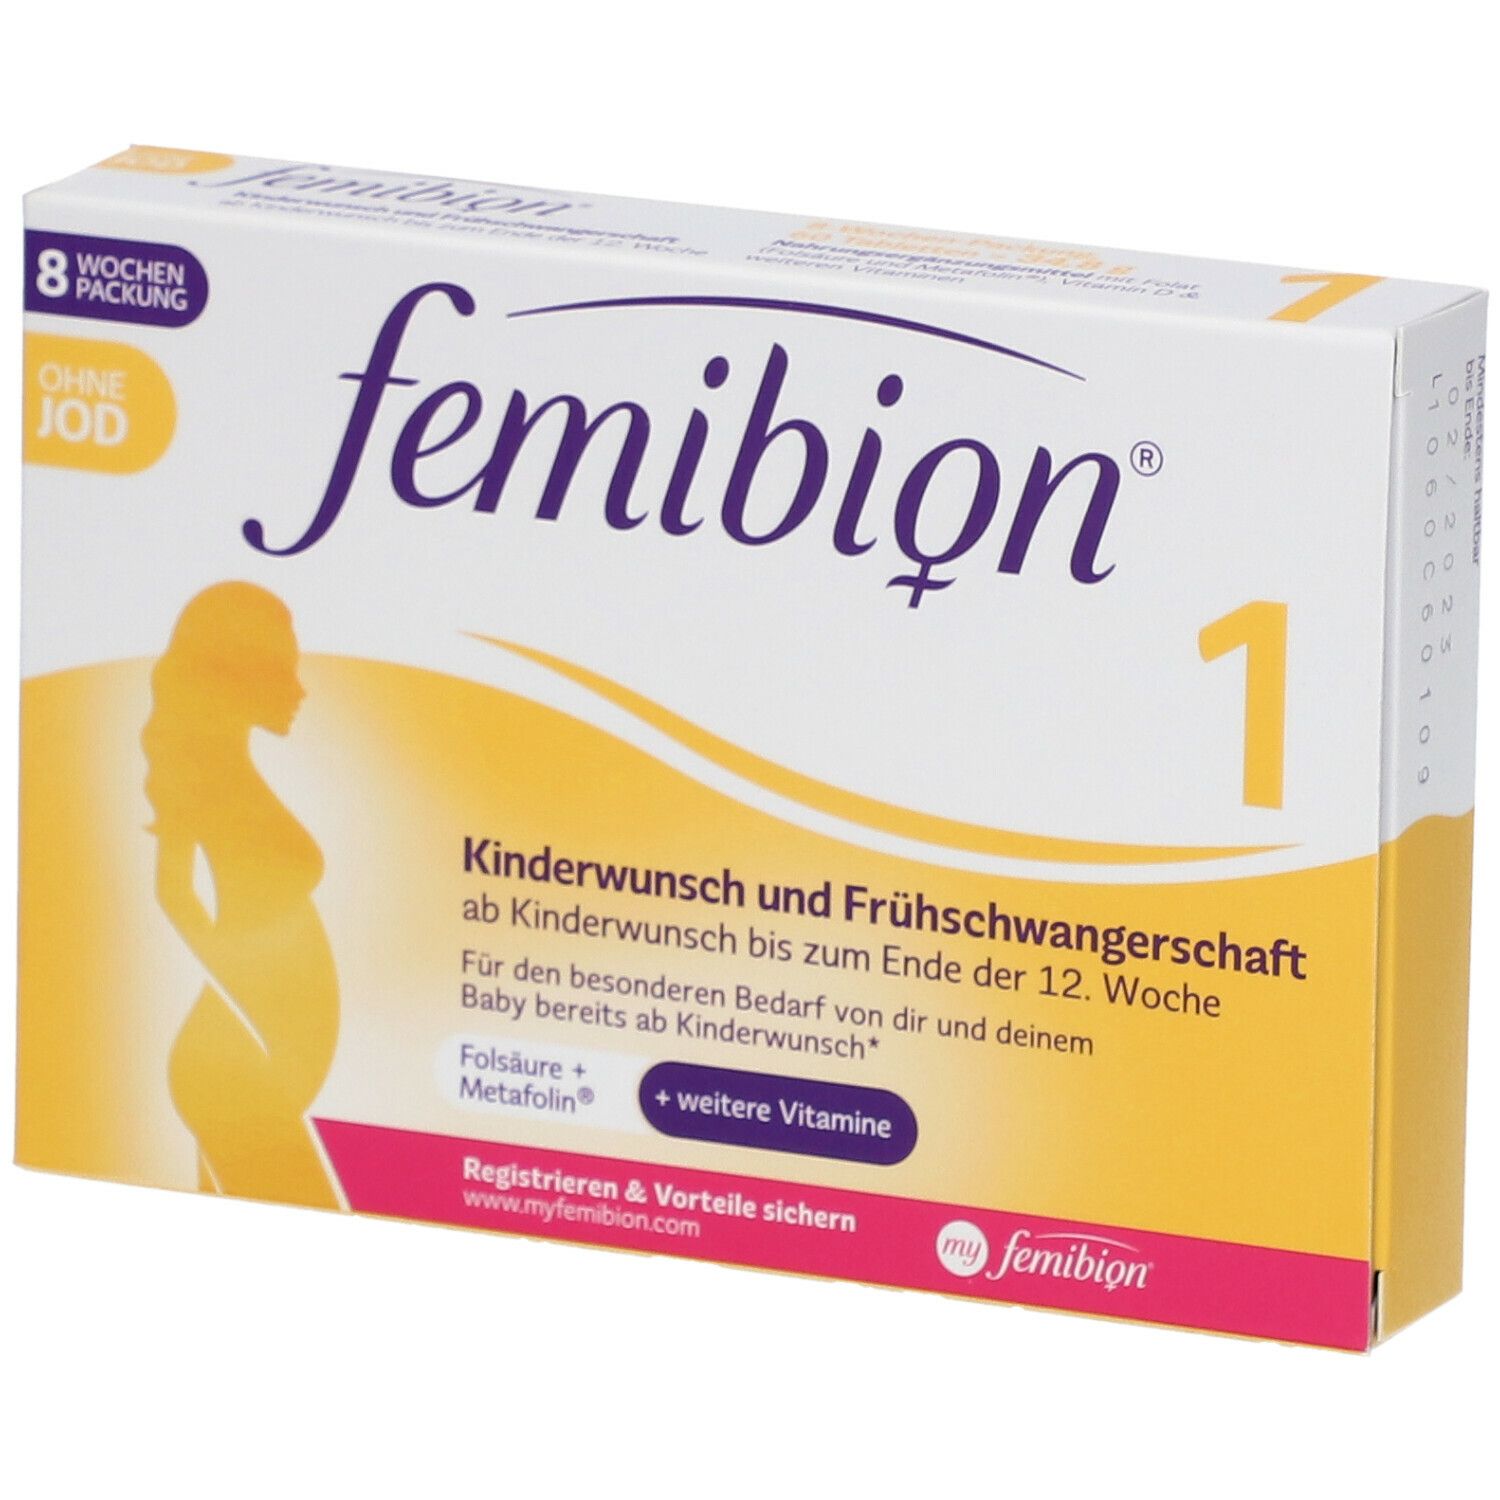 Femibion® Kinderwunsch und Frühschwangerschaft ohne Jod